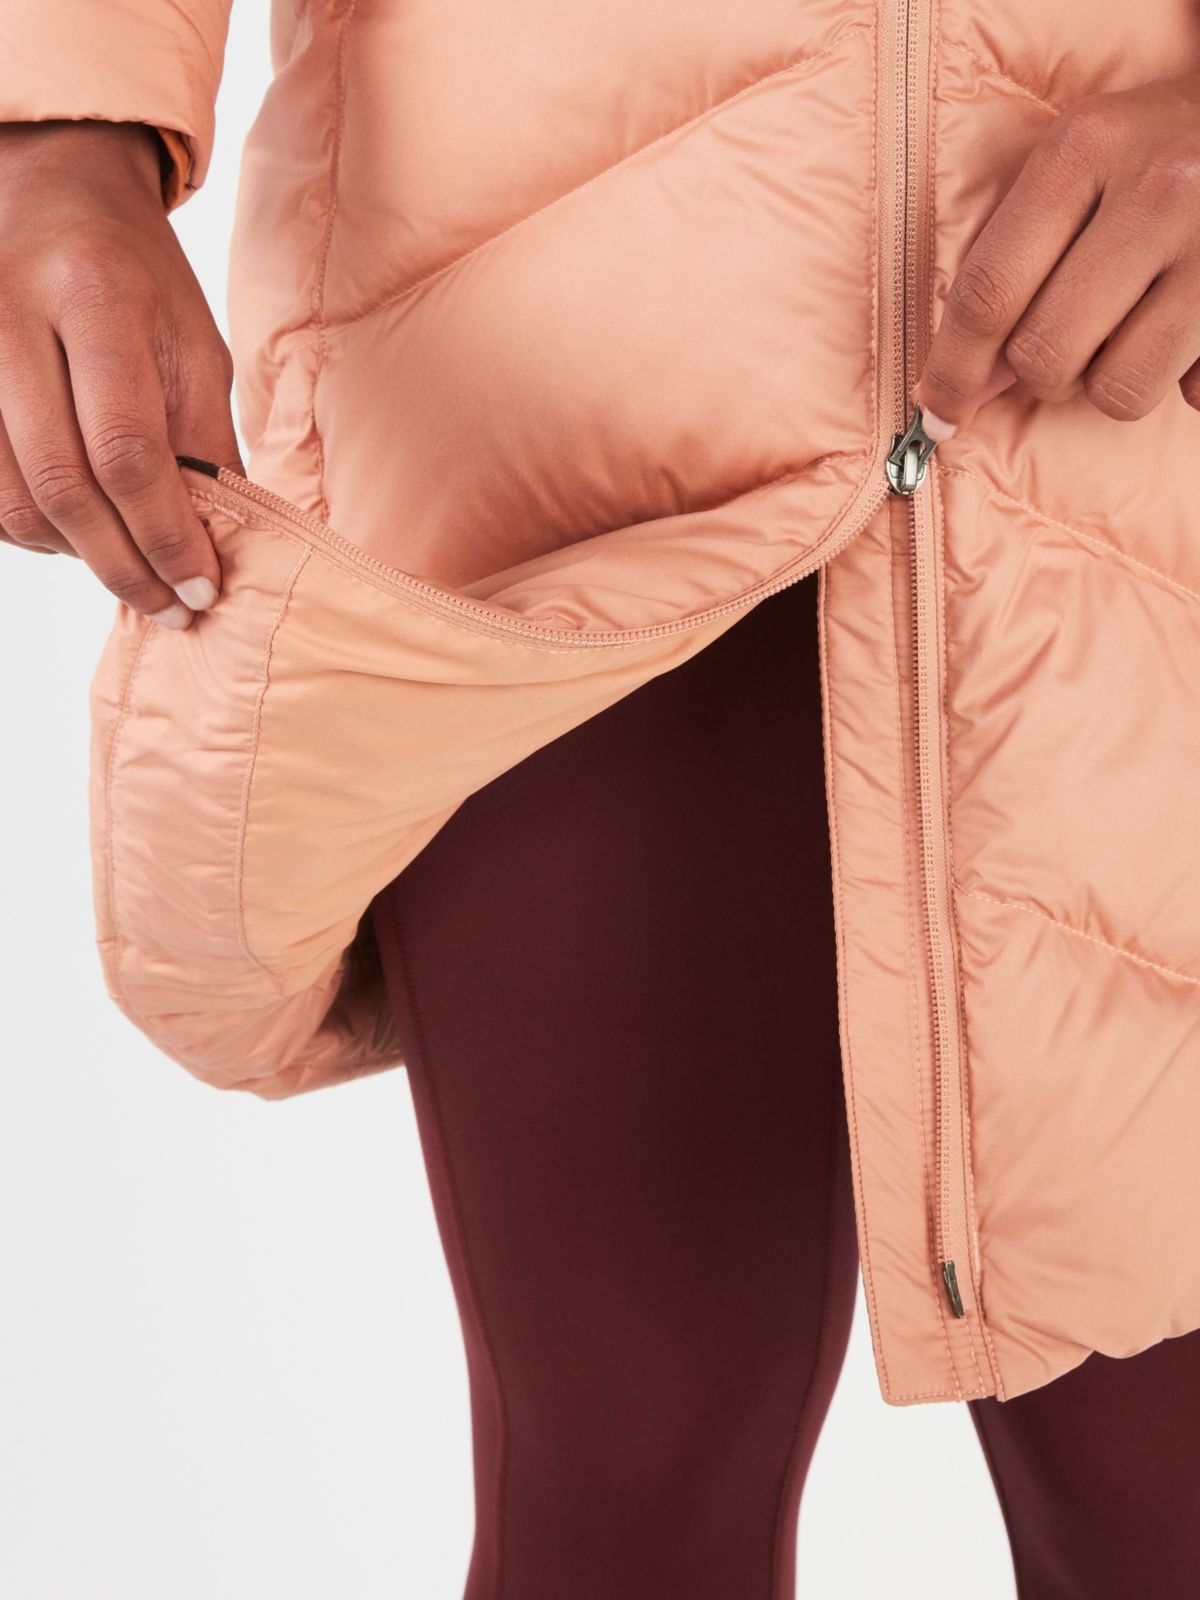 womens jacket zipper zoom in